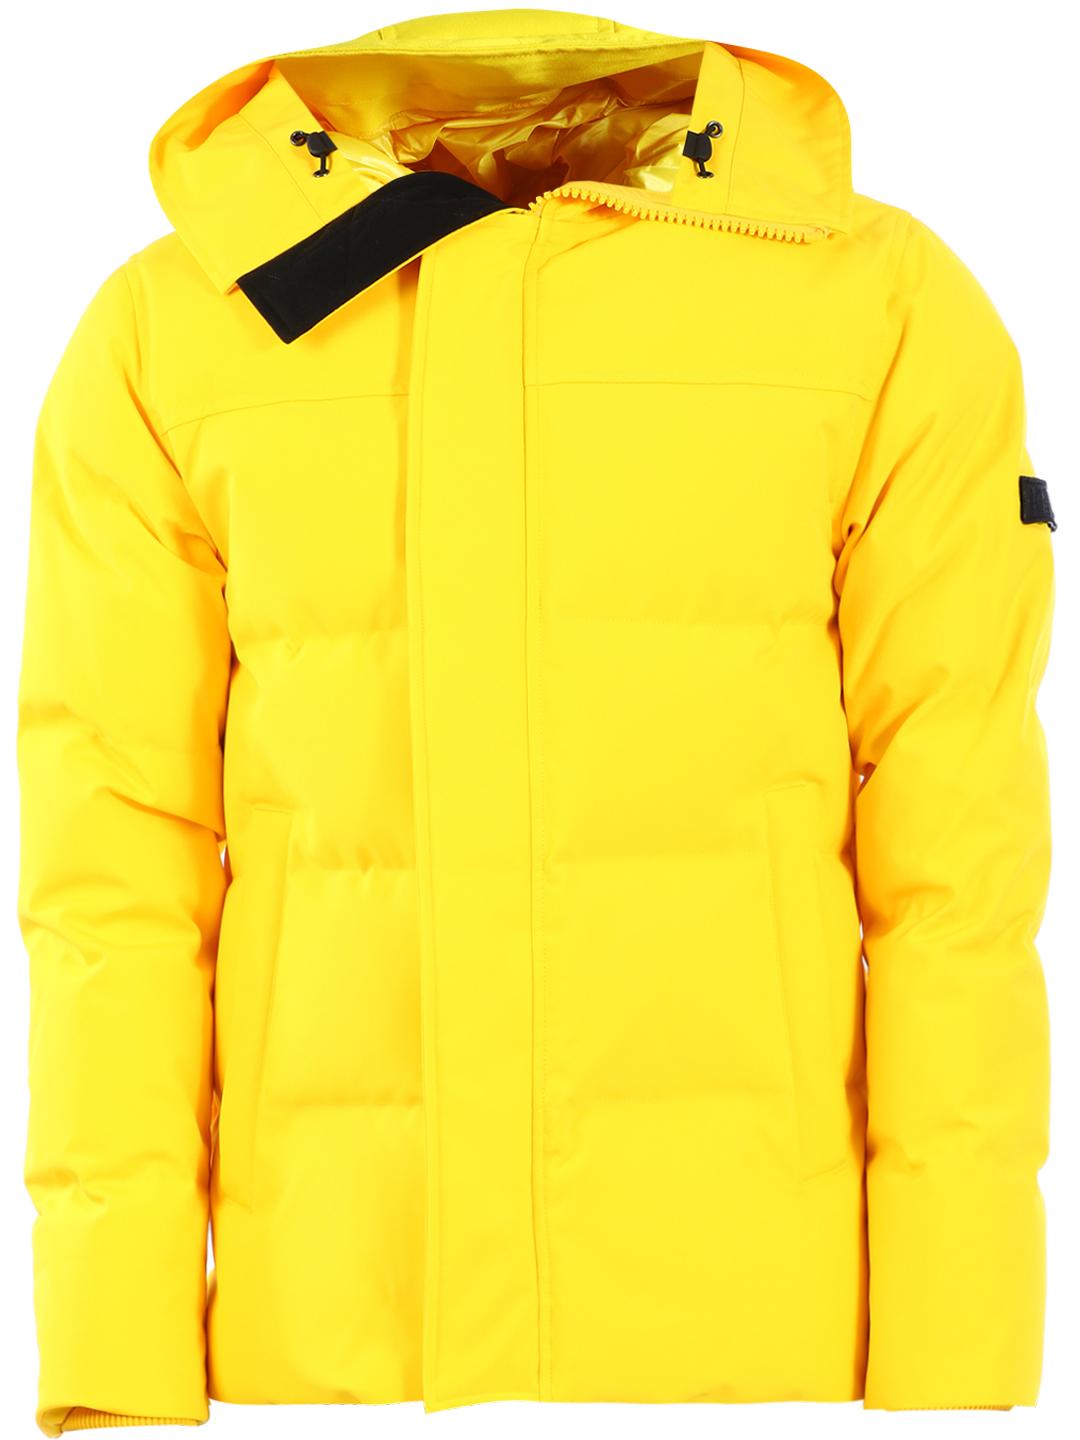 kenzo yellow jacket